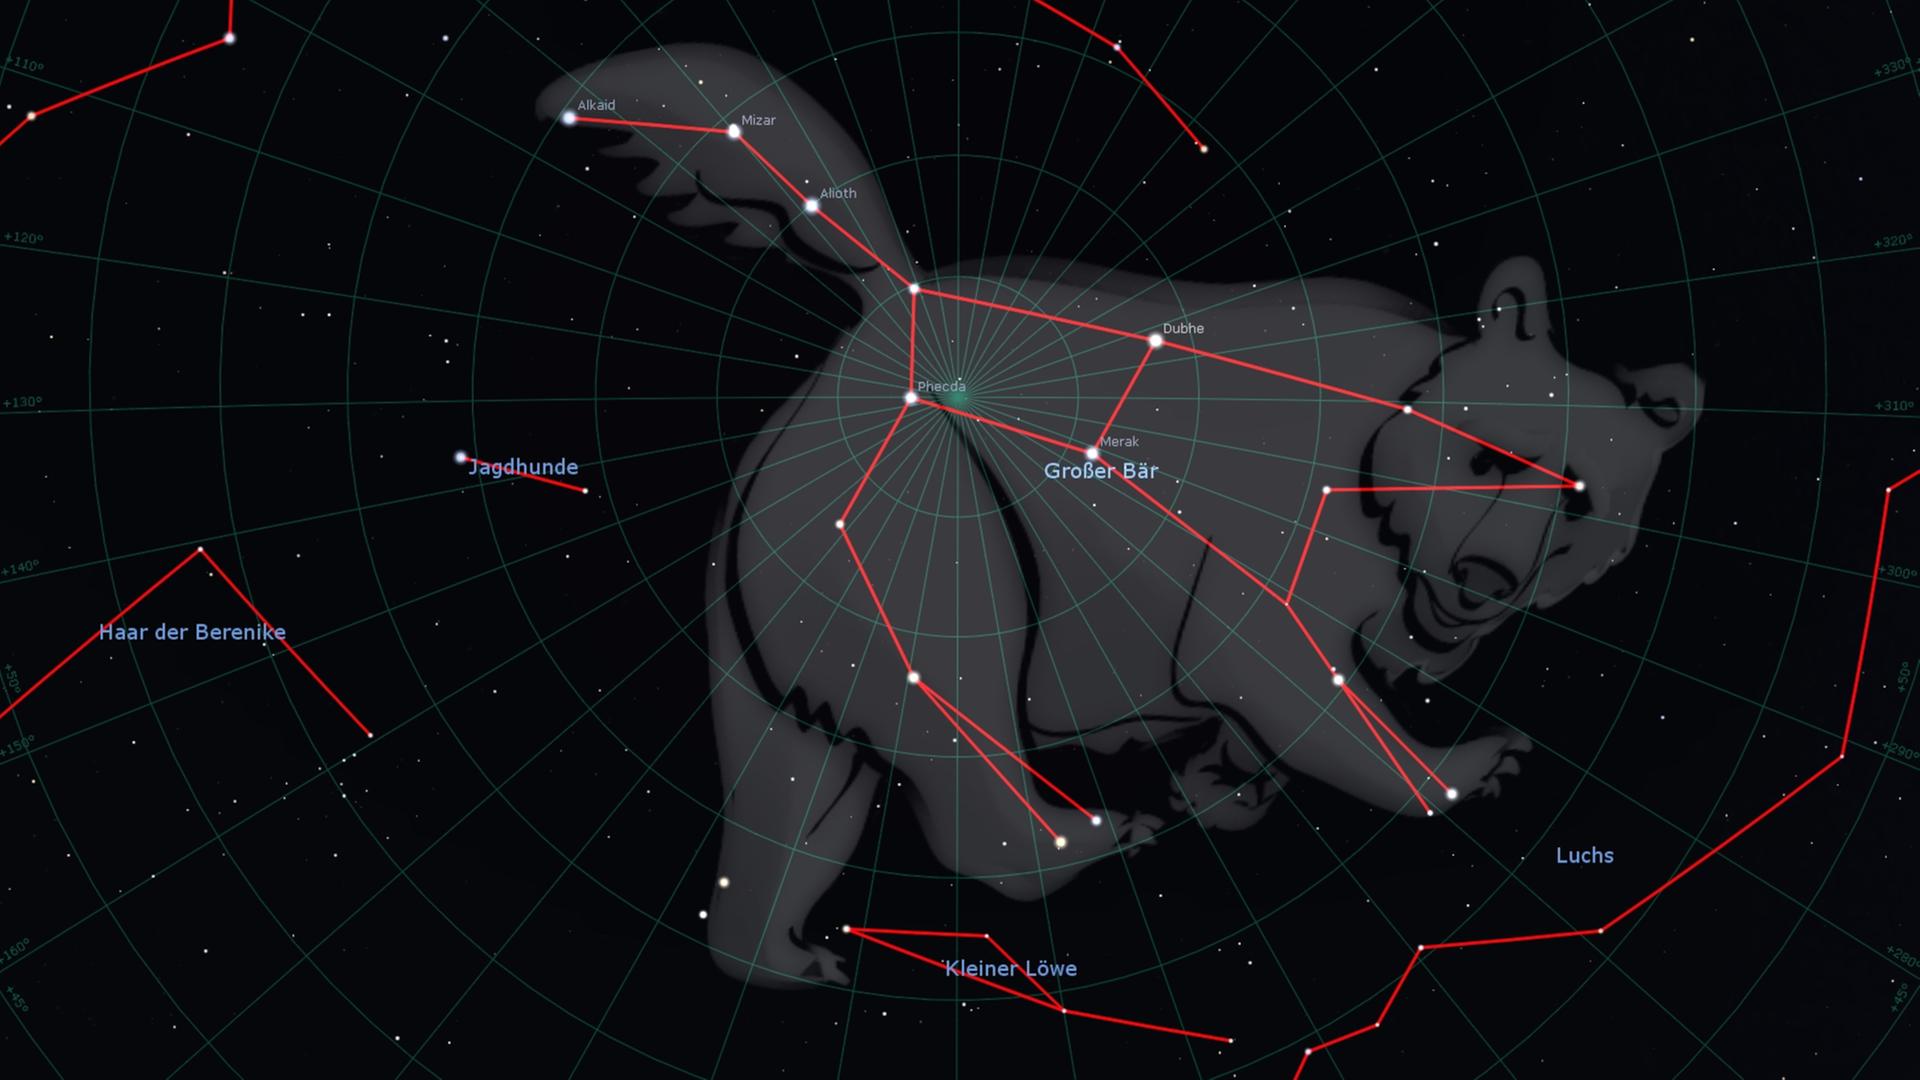 Am 12. April 2023 steht gegen Mitternacht das mächtige Sternbild Großer Bär - zu dem der Große Wagen gehört - senkrecht am Himmel. 

